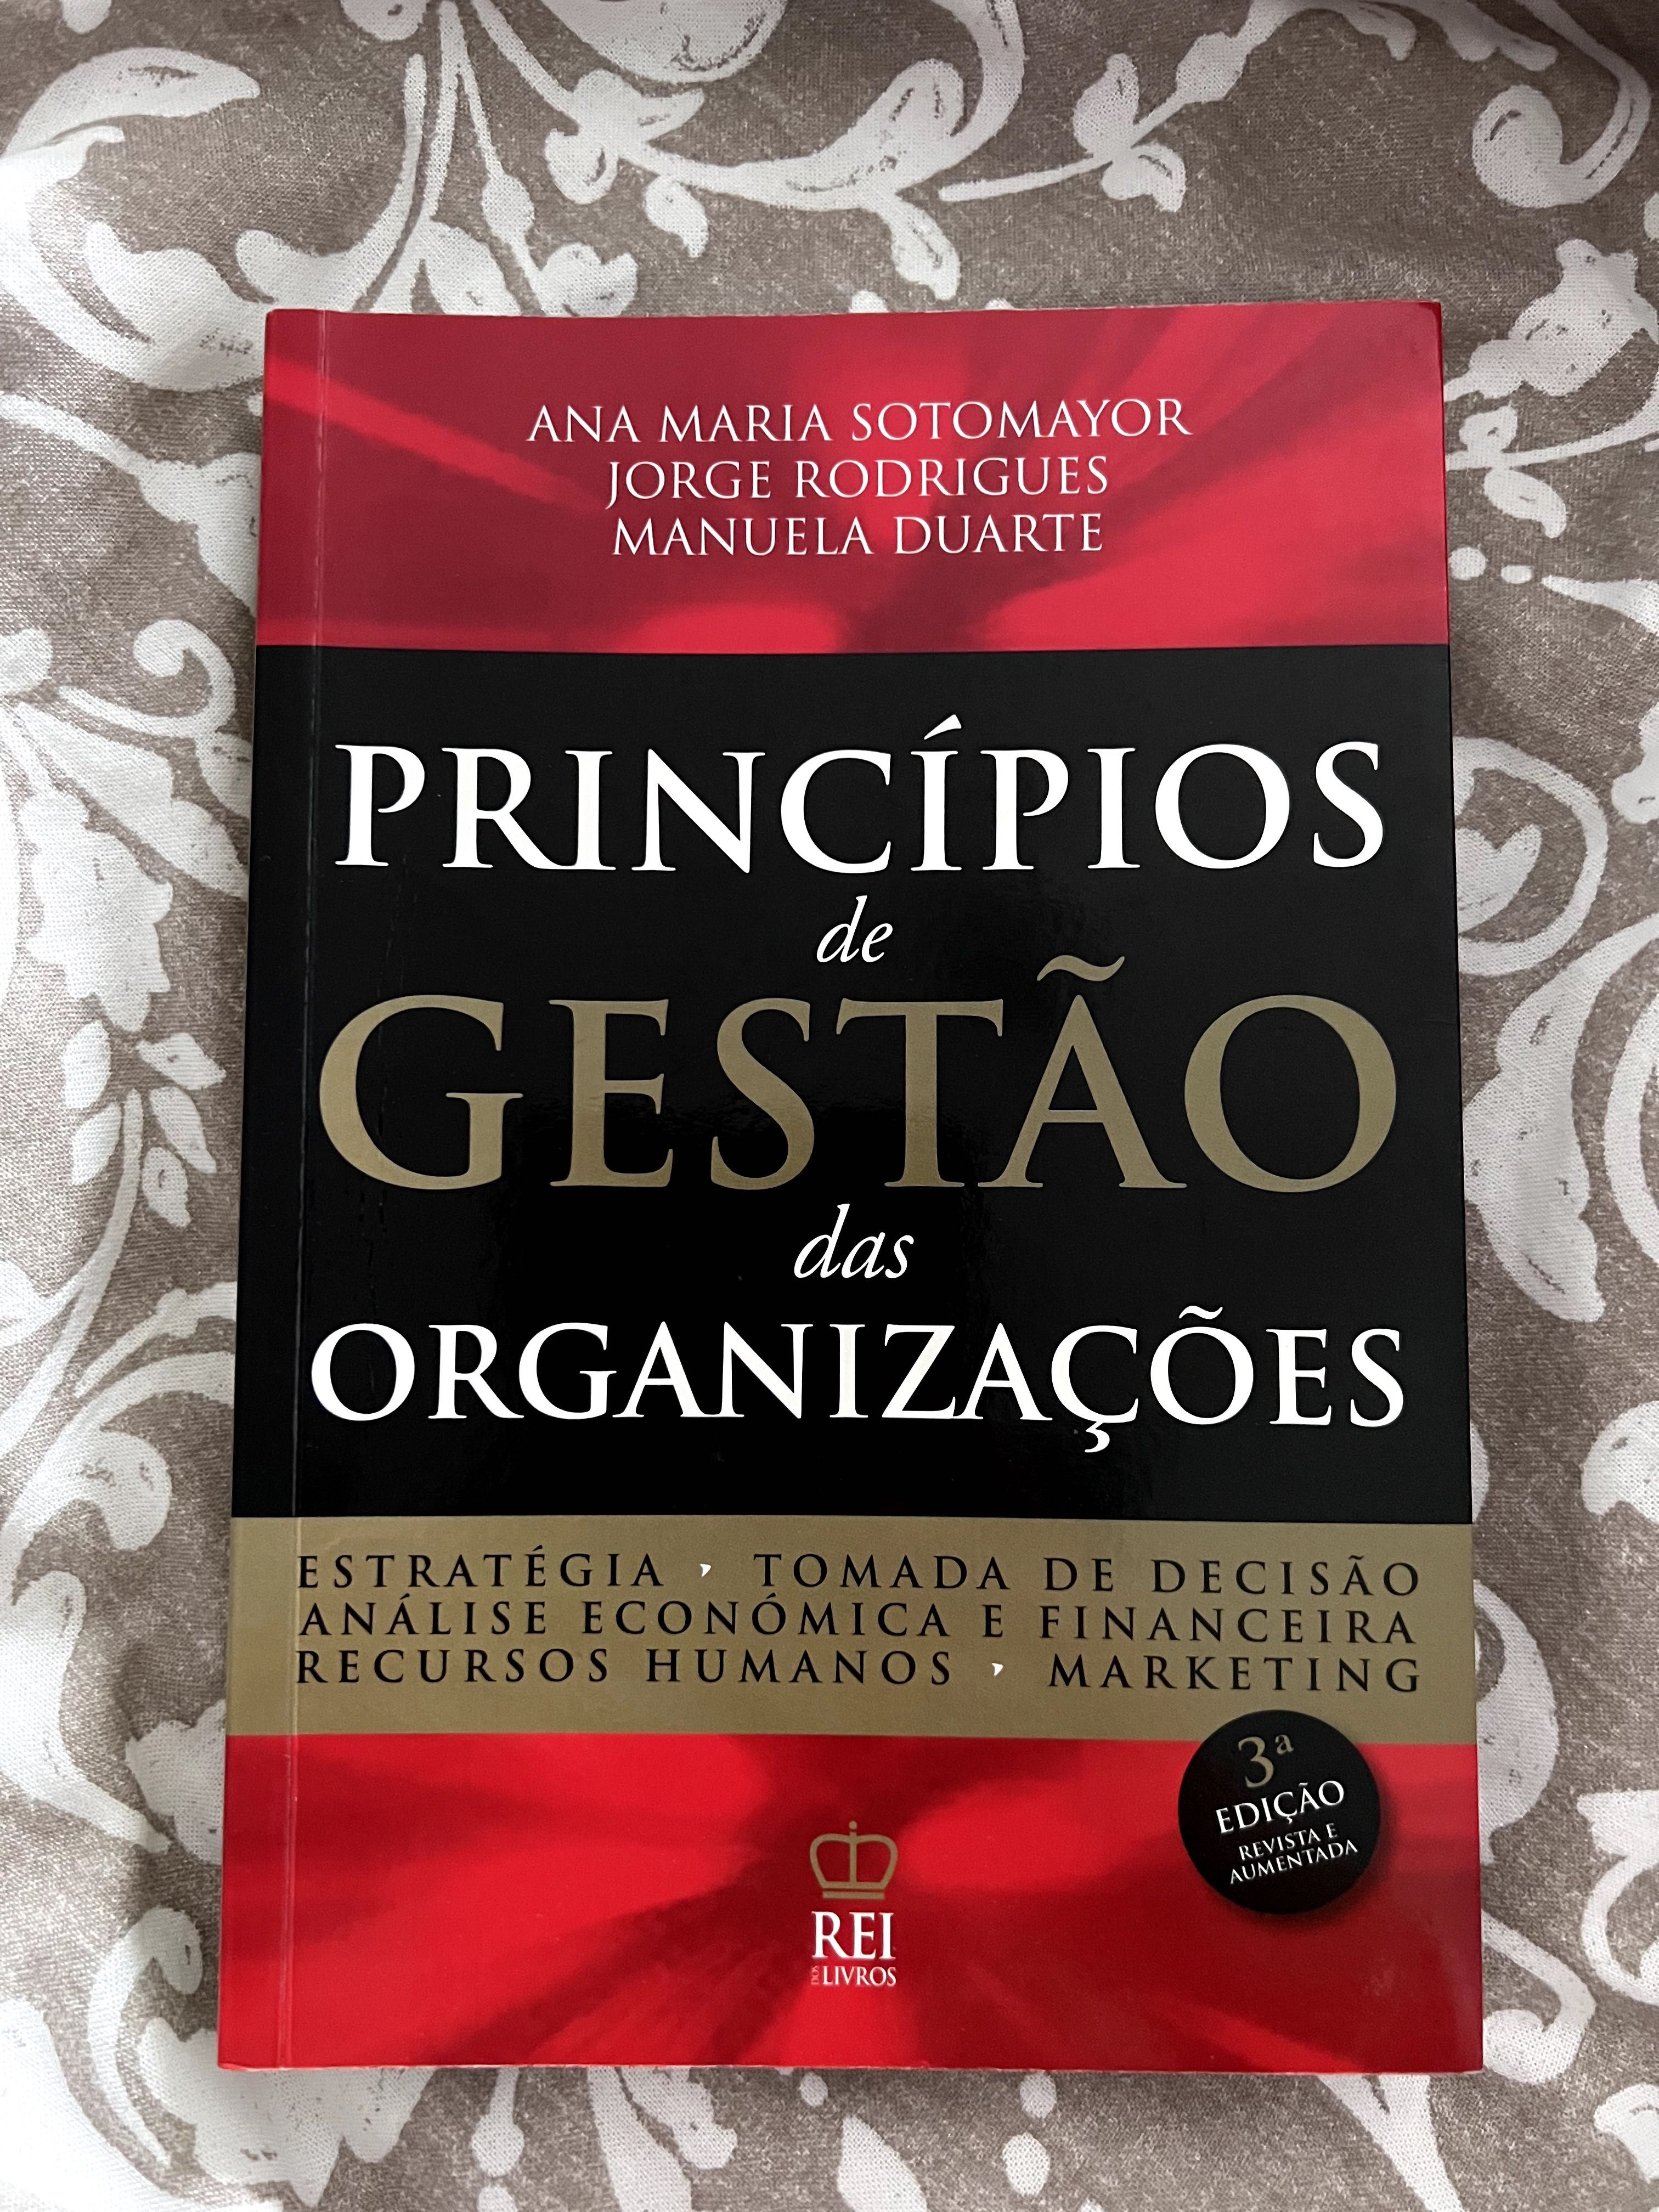 Vendo Livro Princípios de Gestão Organizações + Livro de Exercicios